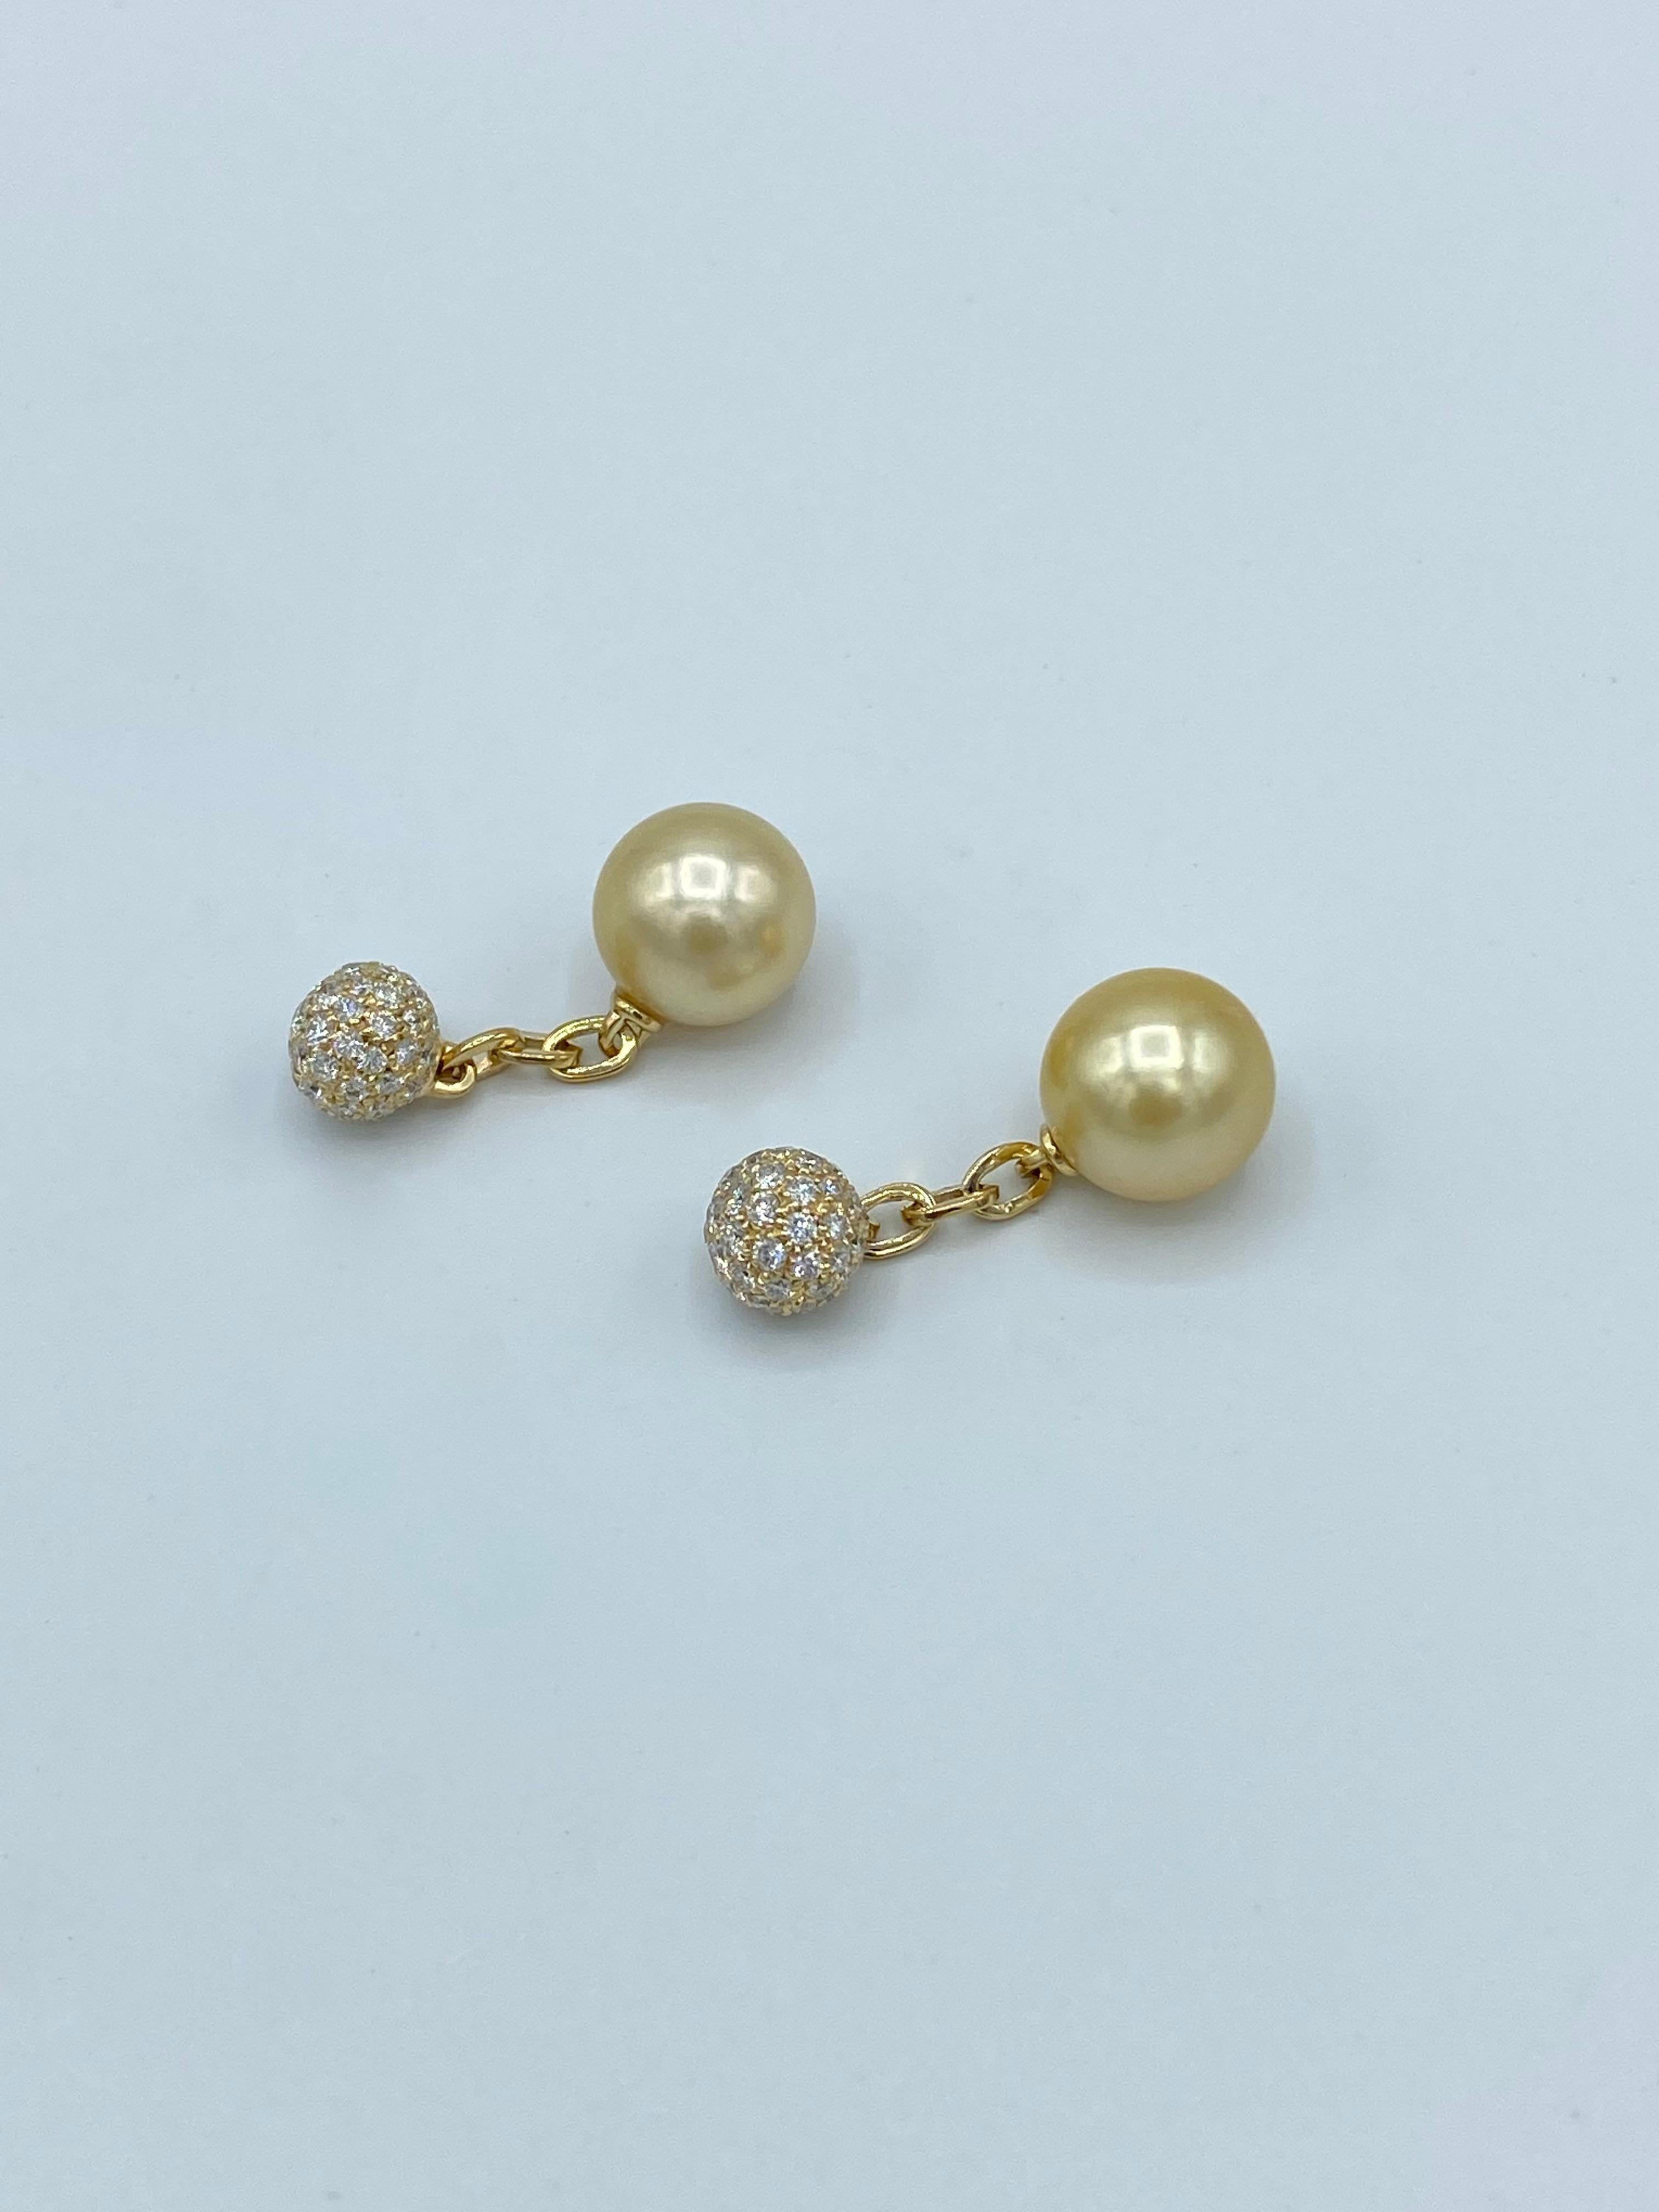 Paire de boutons de manchette raffinés et élégants en or 18Kt.
Les perles d'or australiennes ont une très belle couleur soyeuse et ne sont pas marquées.
Chaque pièce est constituée d'une perle d'Australie d'environ 11 mm de diamètre reliée par une